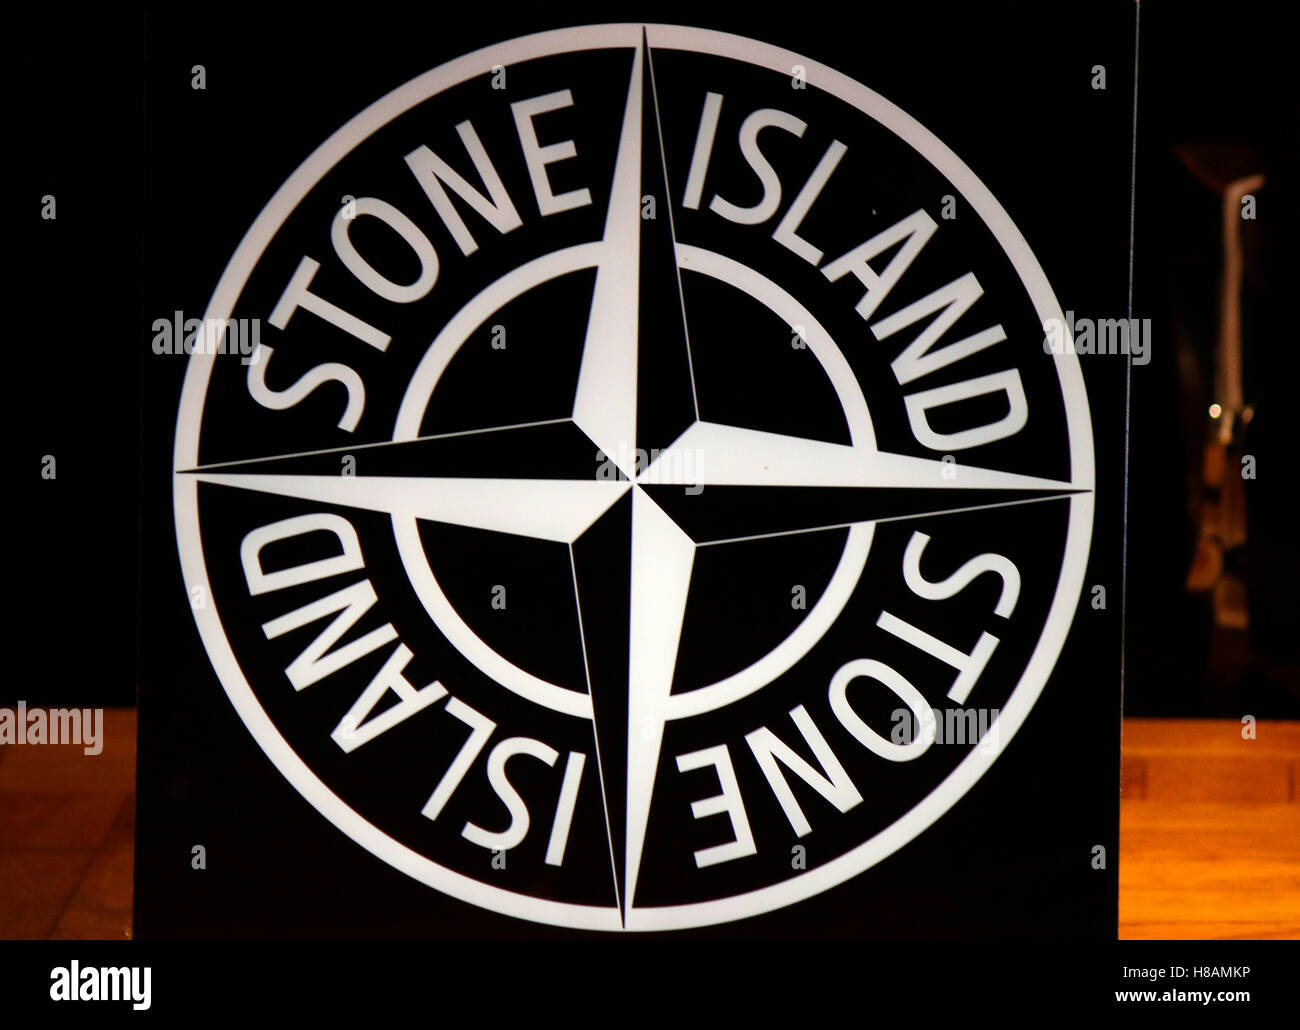 Das Logo der Marke 'Stone Island', Berlino Foto stock - Alamy